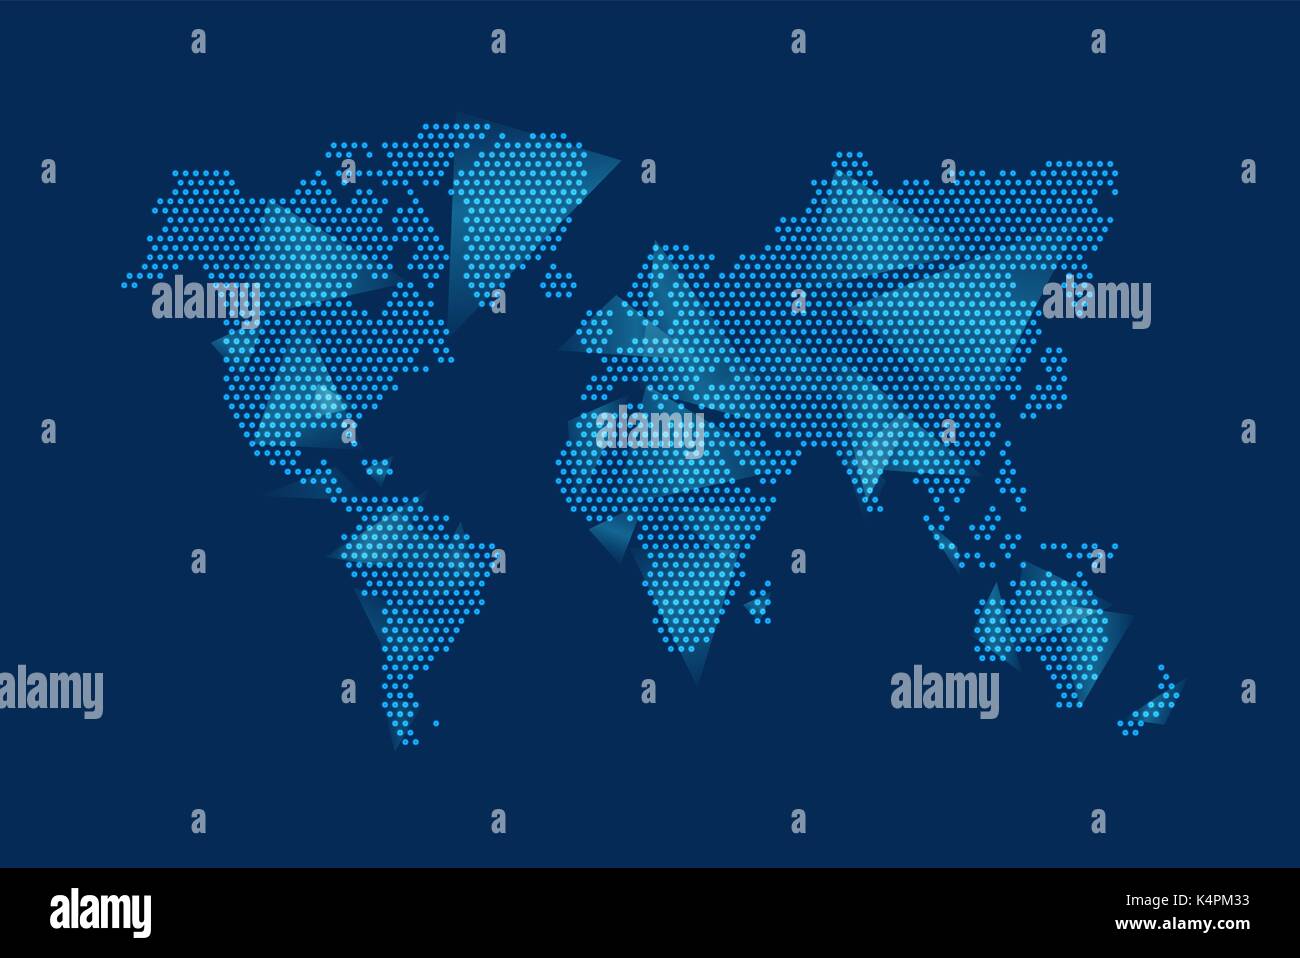 Moderne Bleu digital world map concept illustration avec des éléments futuristes idéal pour les affaires, la science ou de projets internet. Vecteur EPS10. Illustration de Vecteur